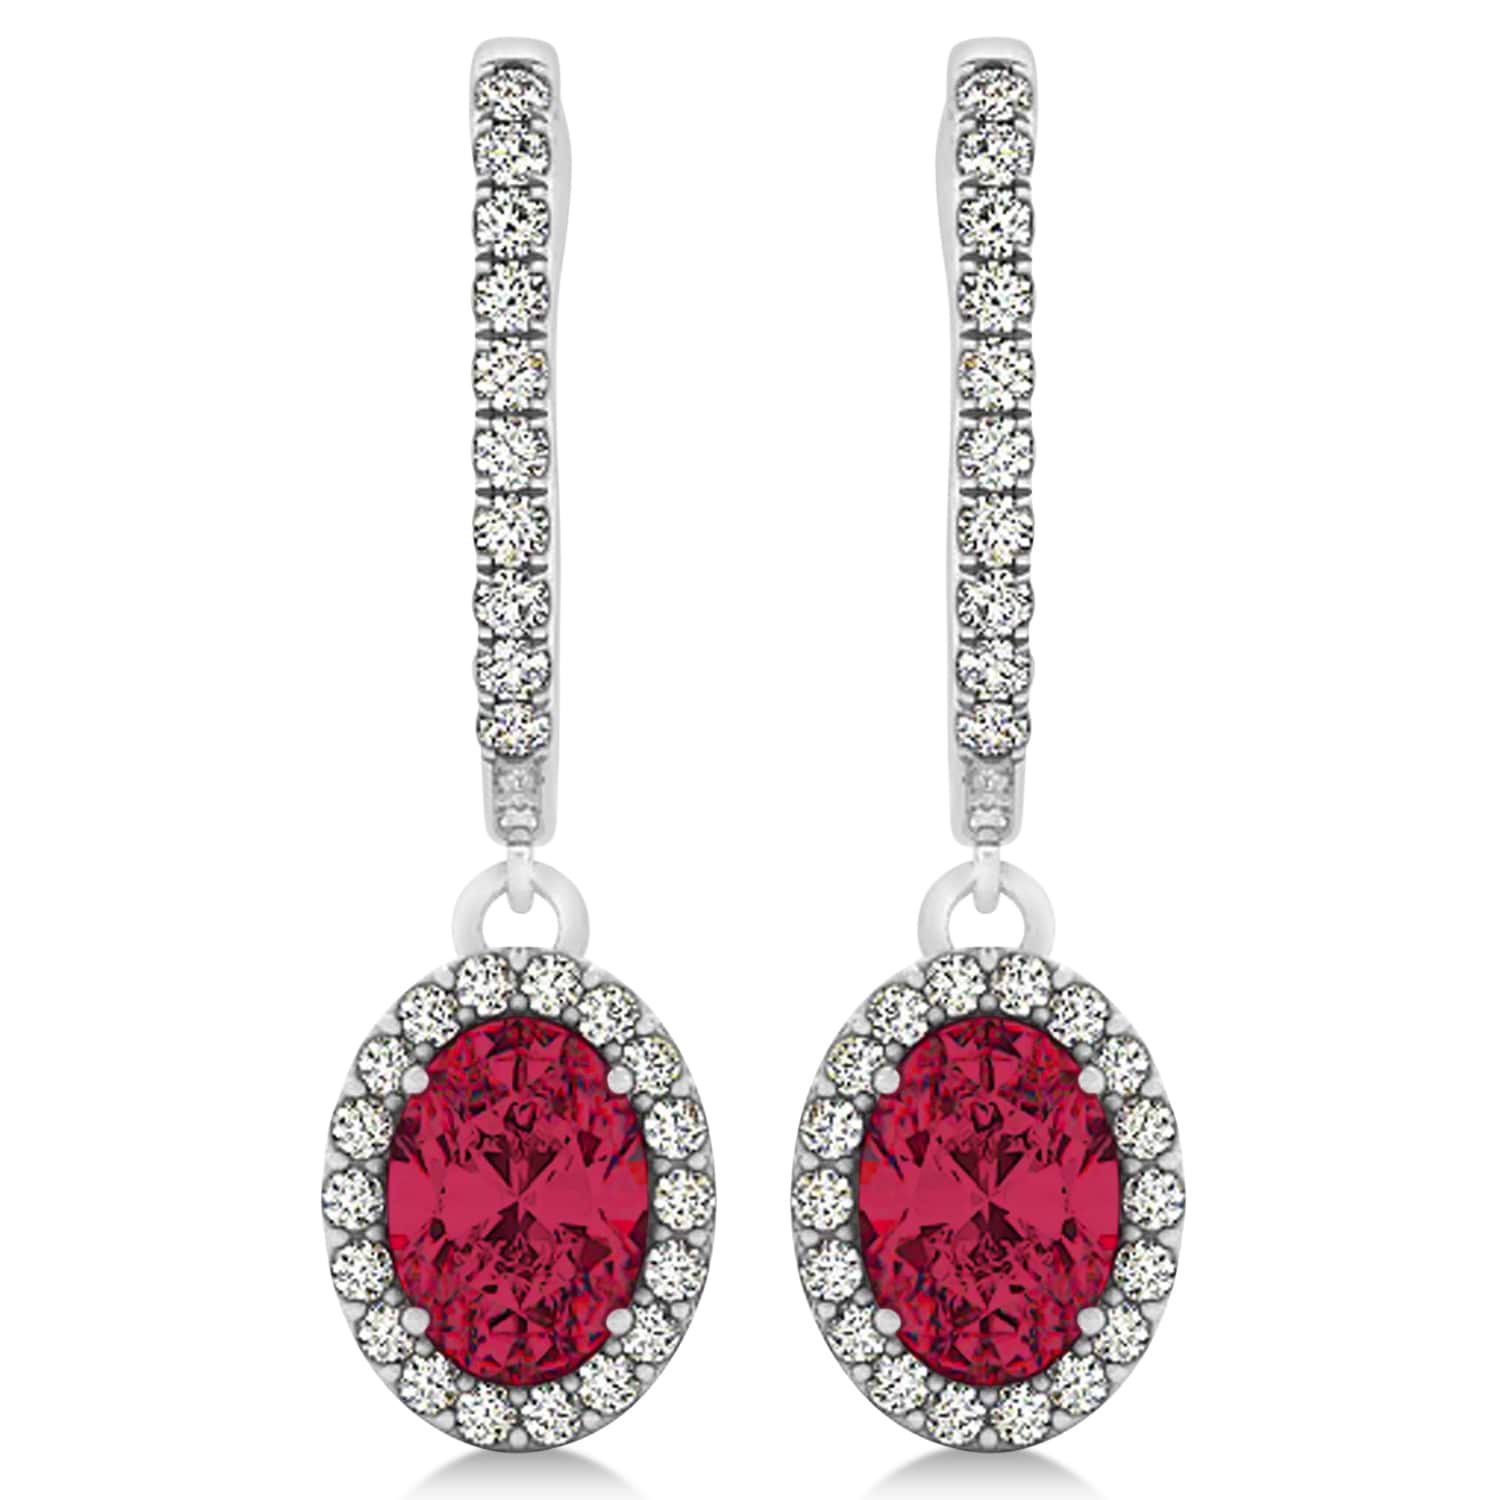 Oval Halo Diamond & Ruby Drop Earrings in 14k White Gold 1.60ct